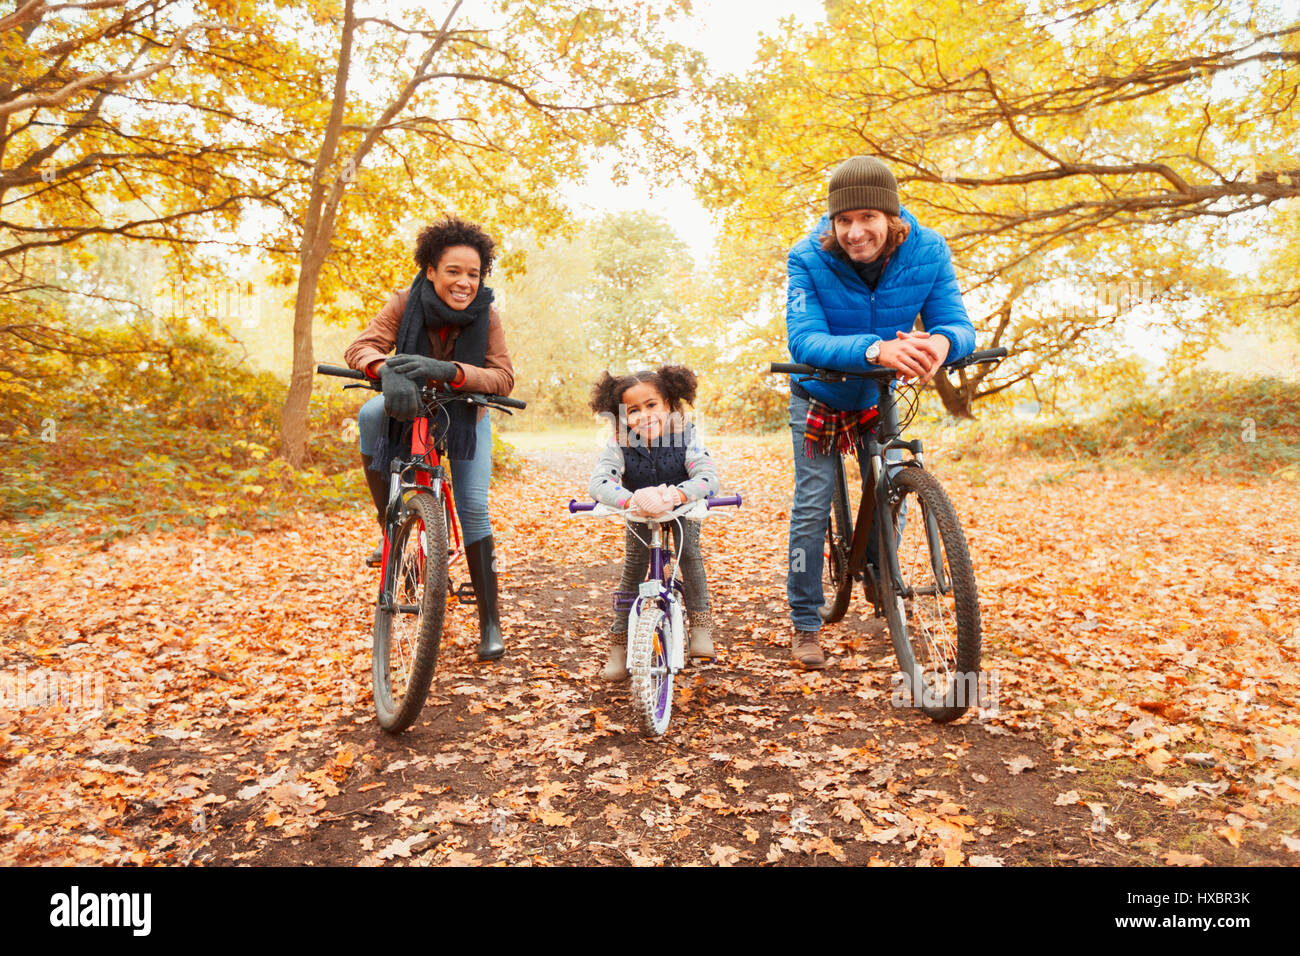 Porträt, lächelnde junge Familie Radfahren im Herbst park Stockfoto